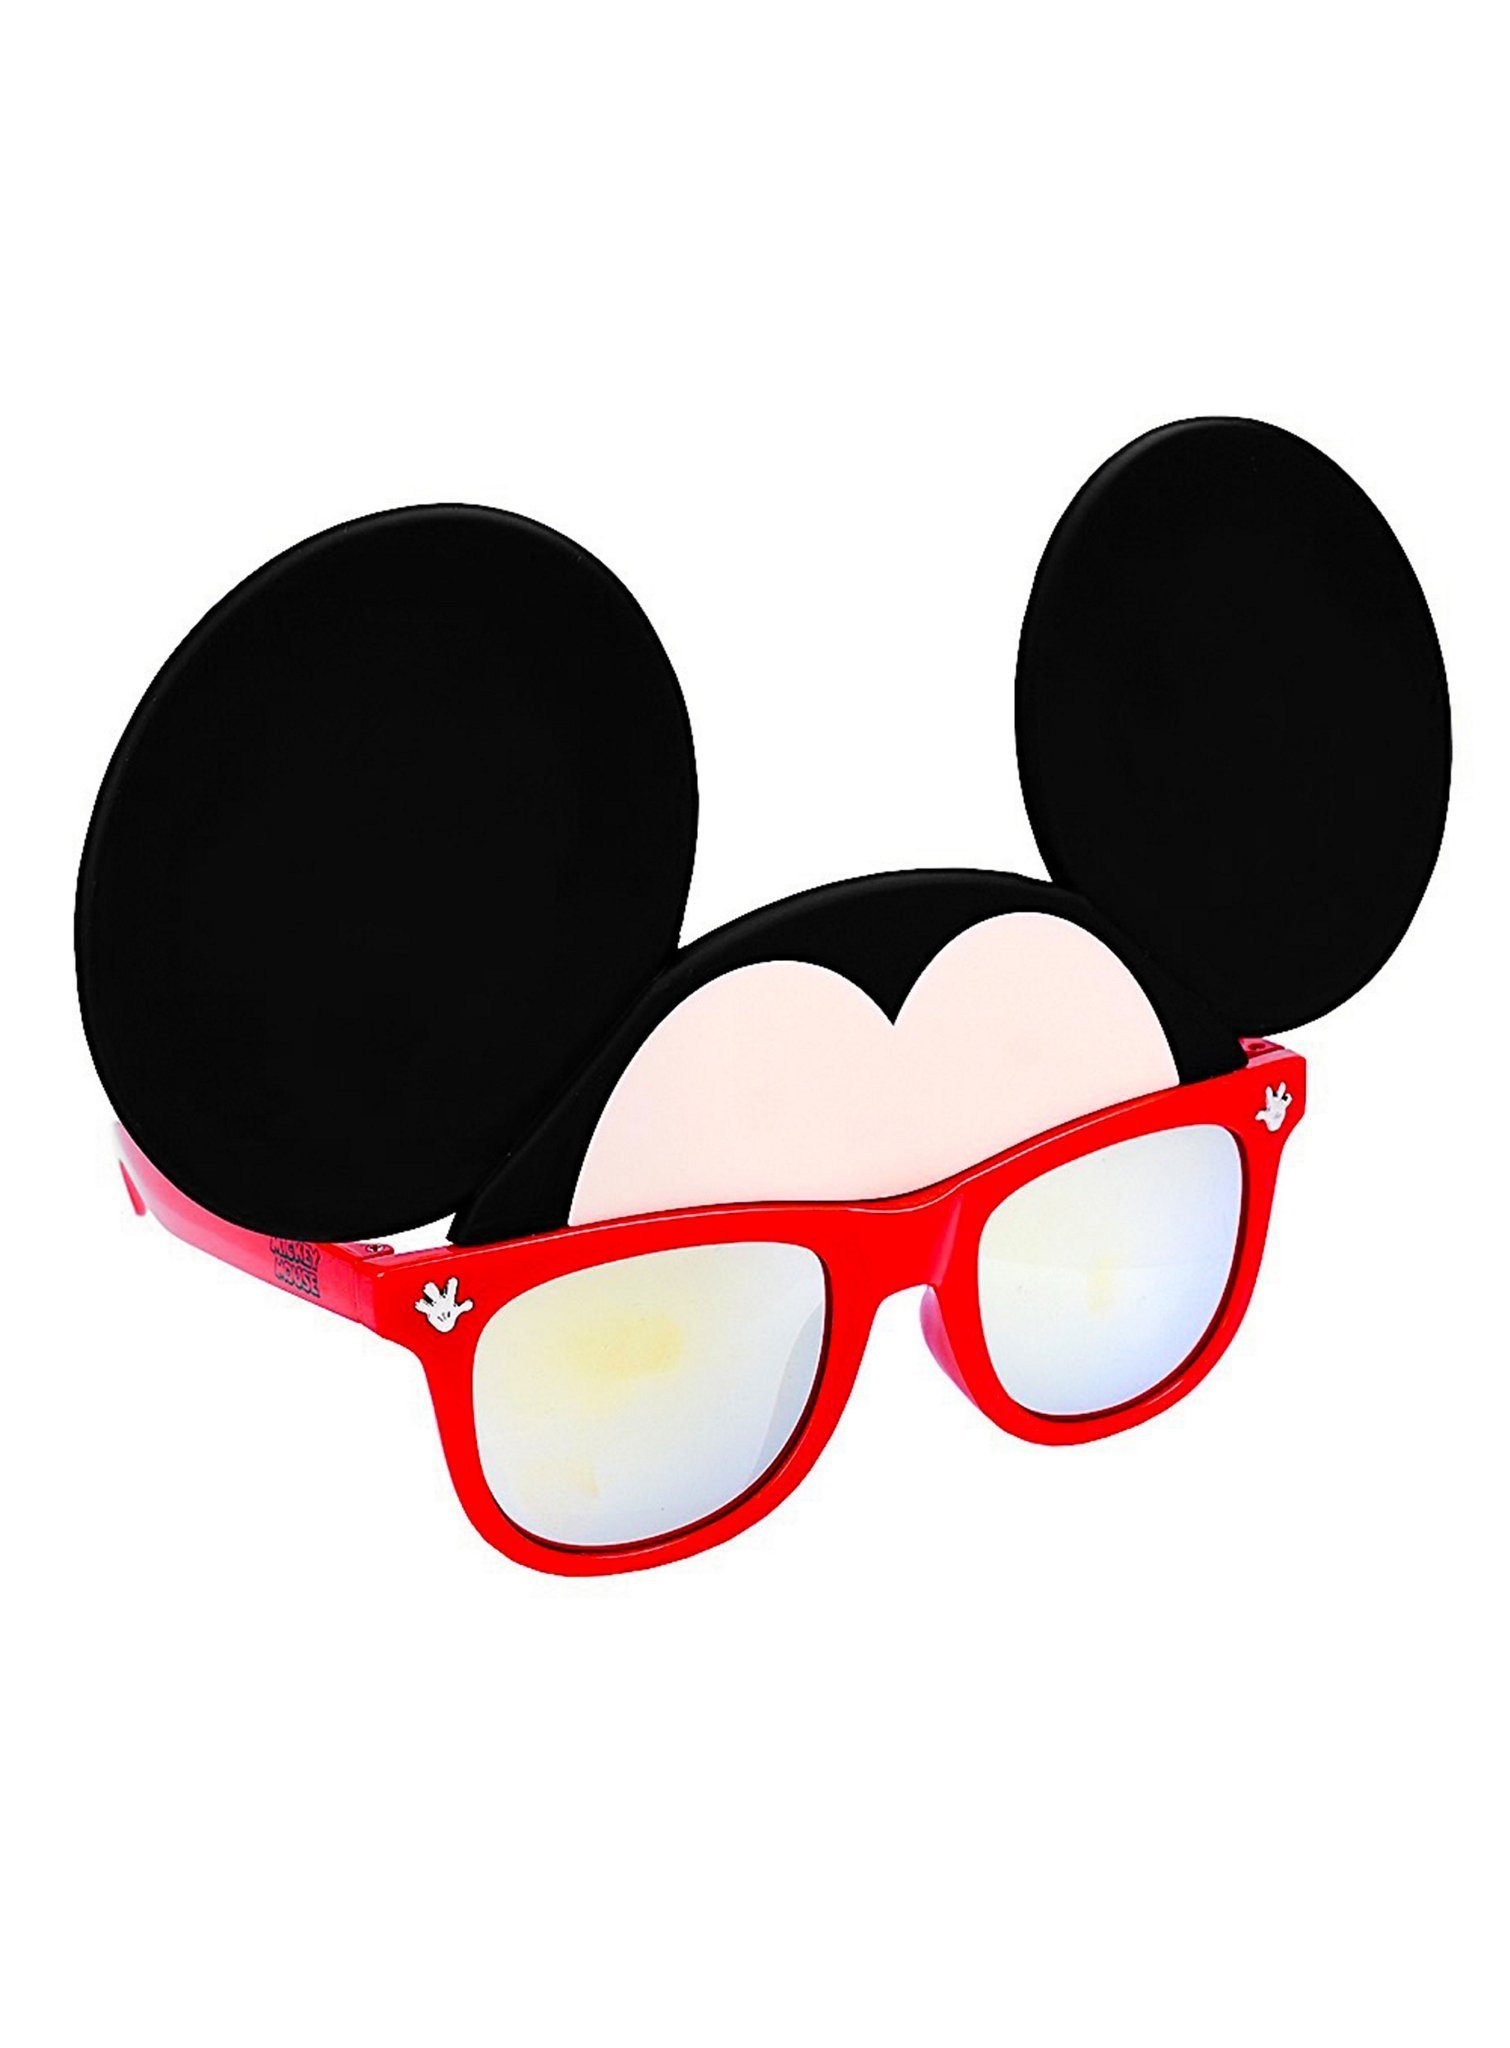 Sun Staches Kostüm Partybrille Micky Maus, Für Leute mit Durchblick: lizenzierte Funbrille im Disney-Design